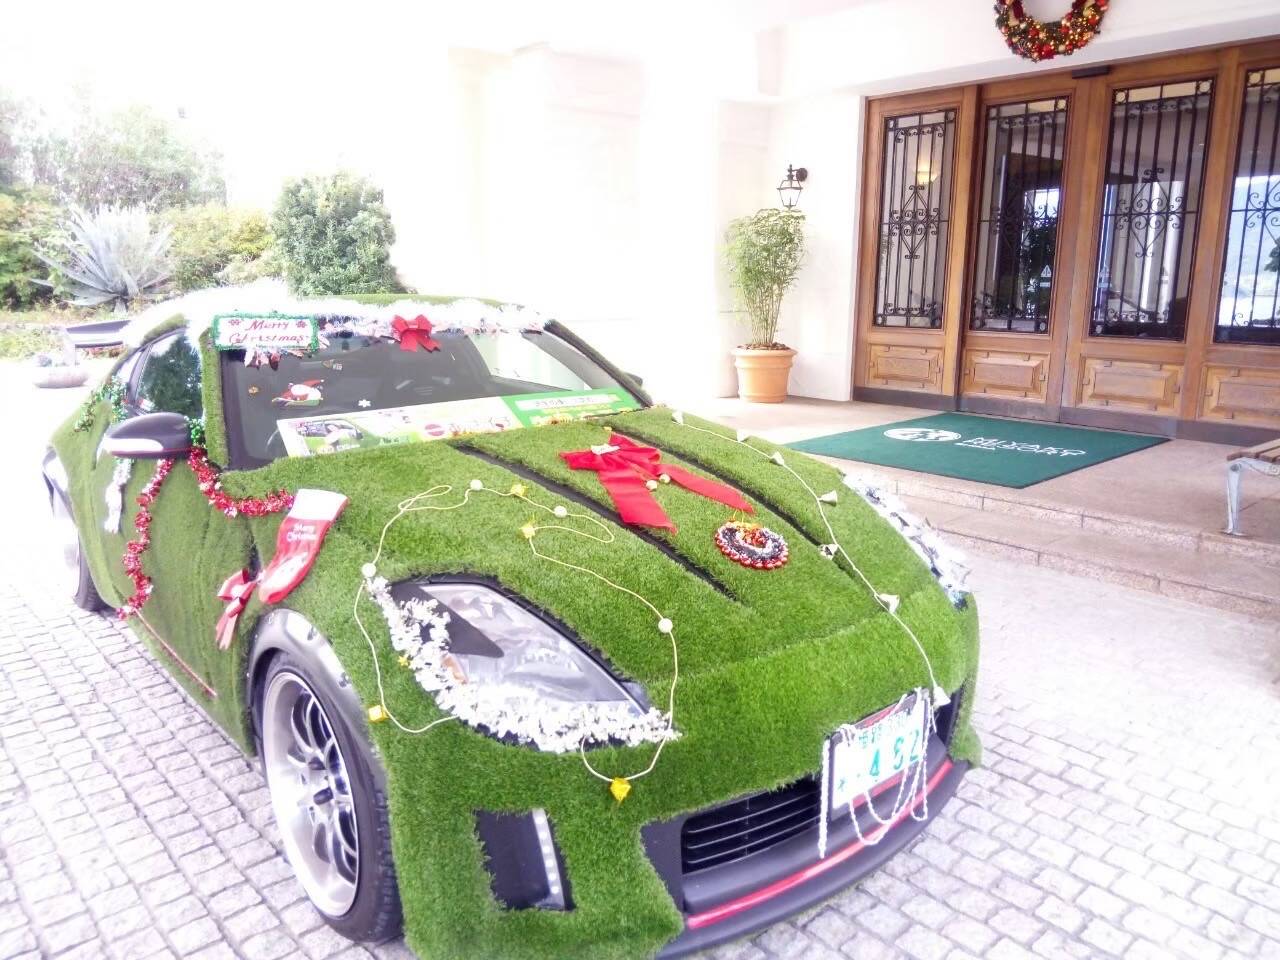 メリークリスマス 人工芝の車を飾り付け 兵庫の人工芝芝ならお任せ!!